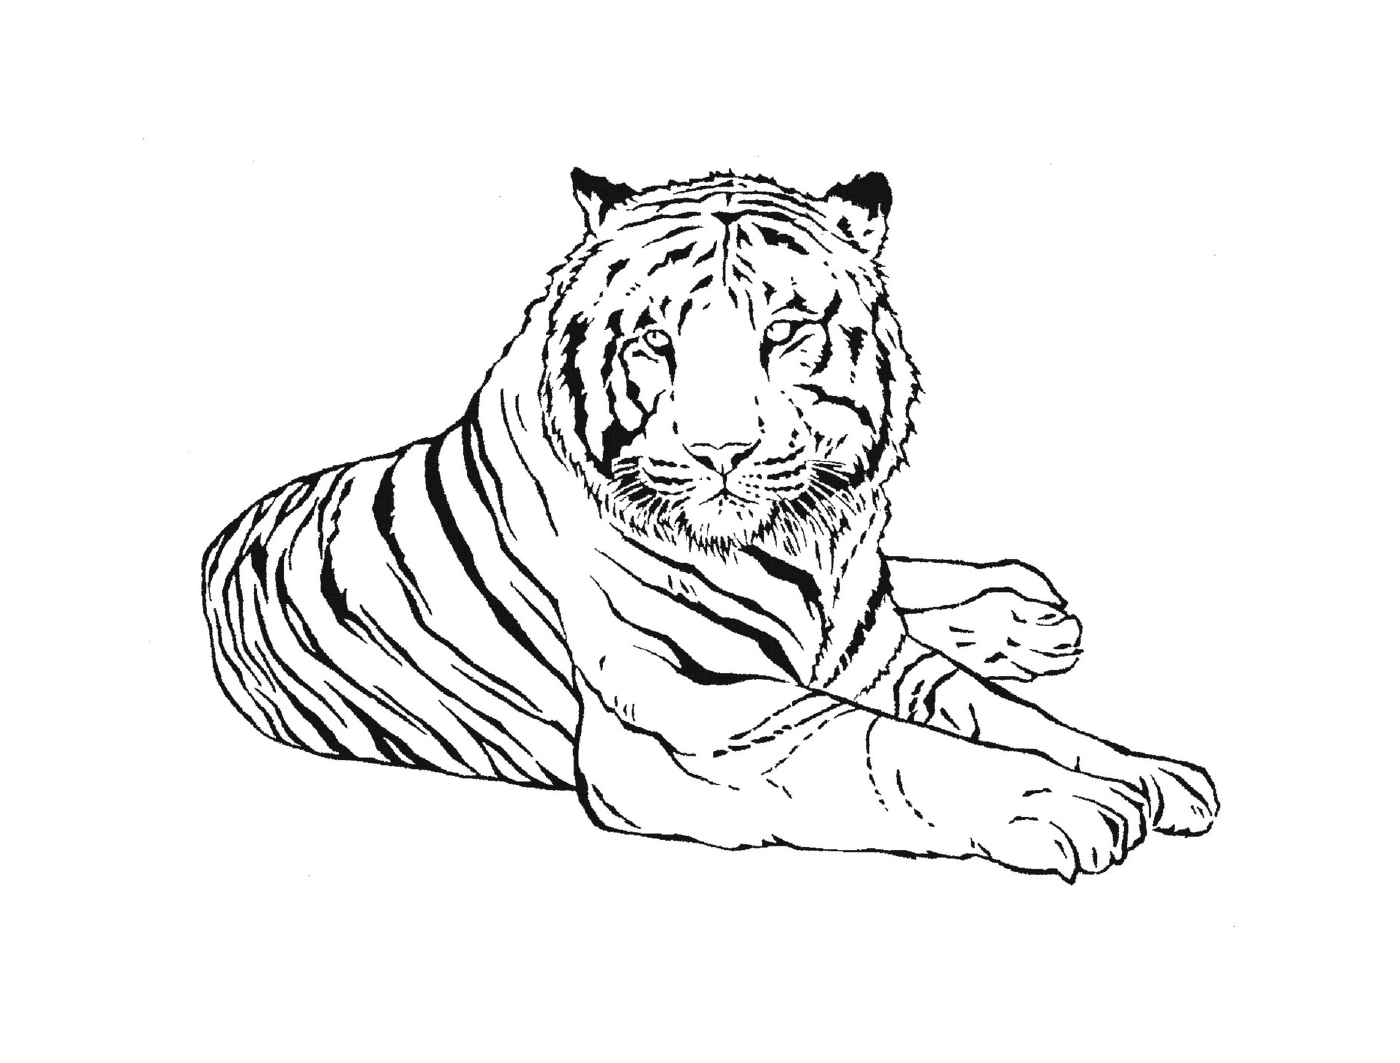   Un tigre de la région de Buenos Aires 